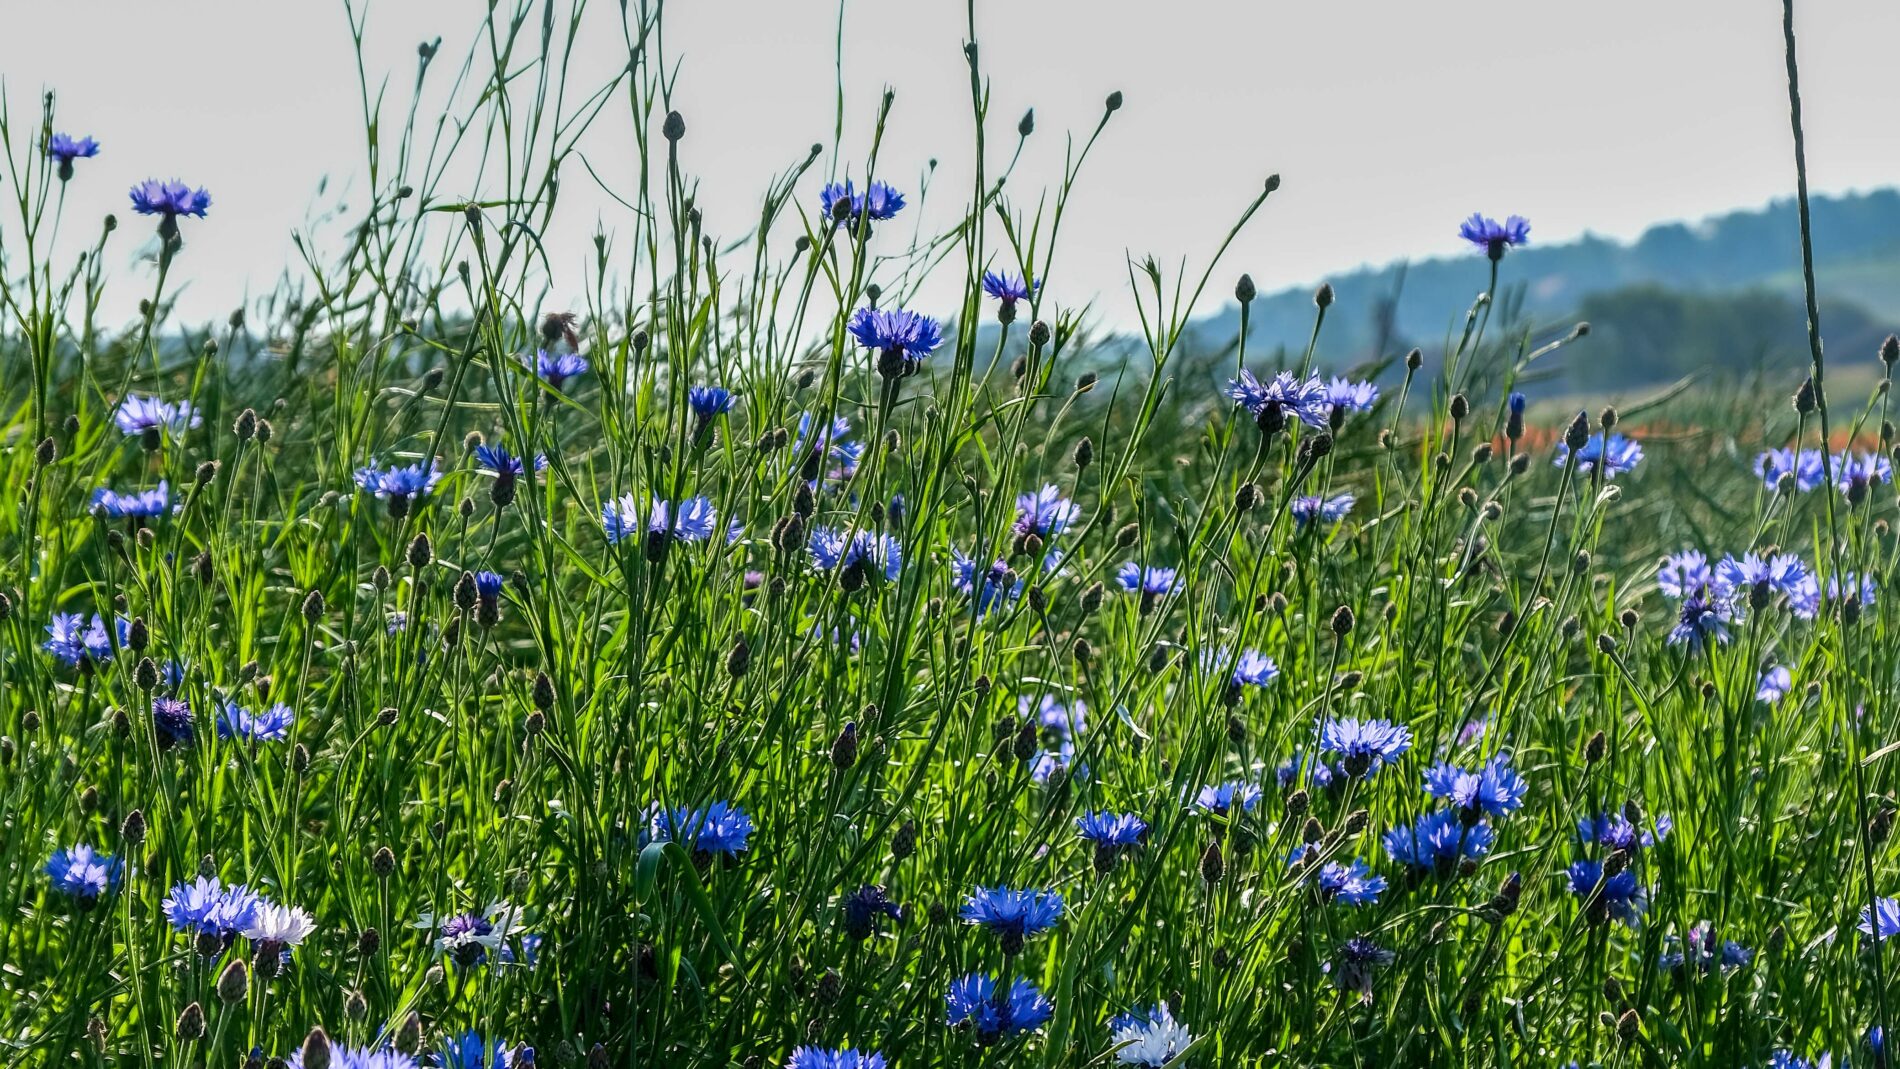 A field of blue cornflowers